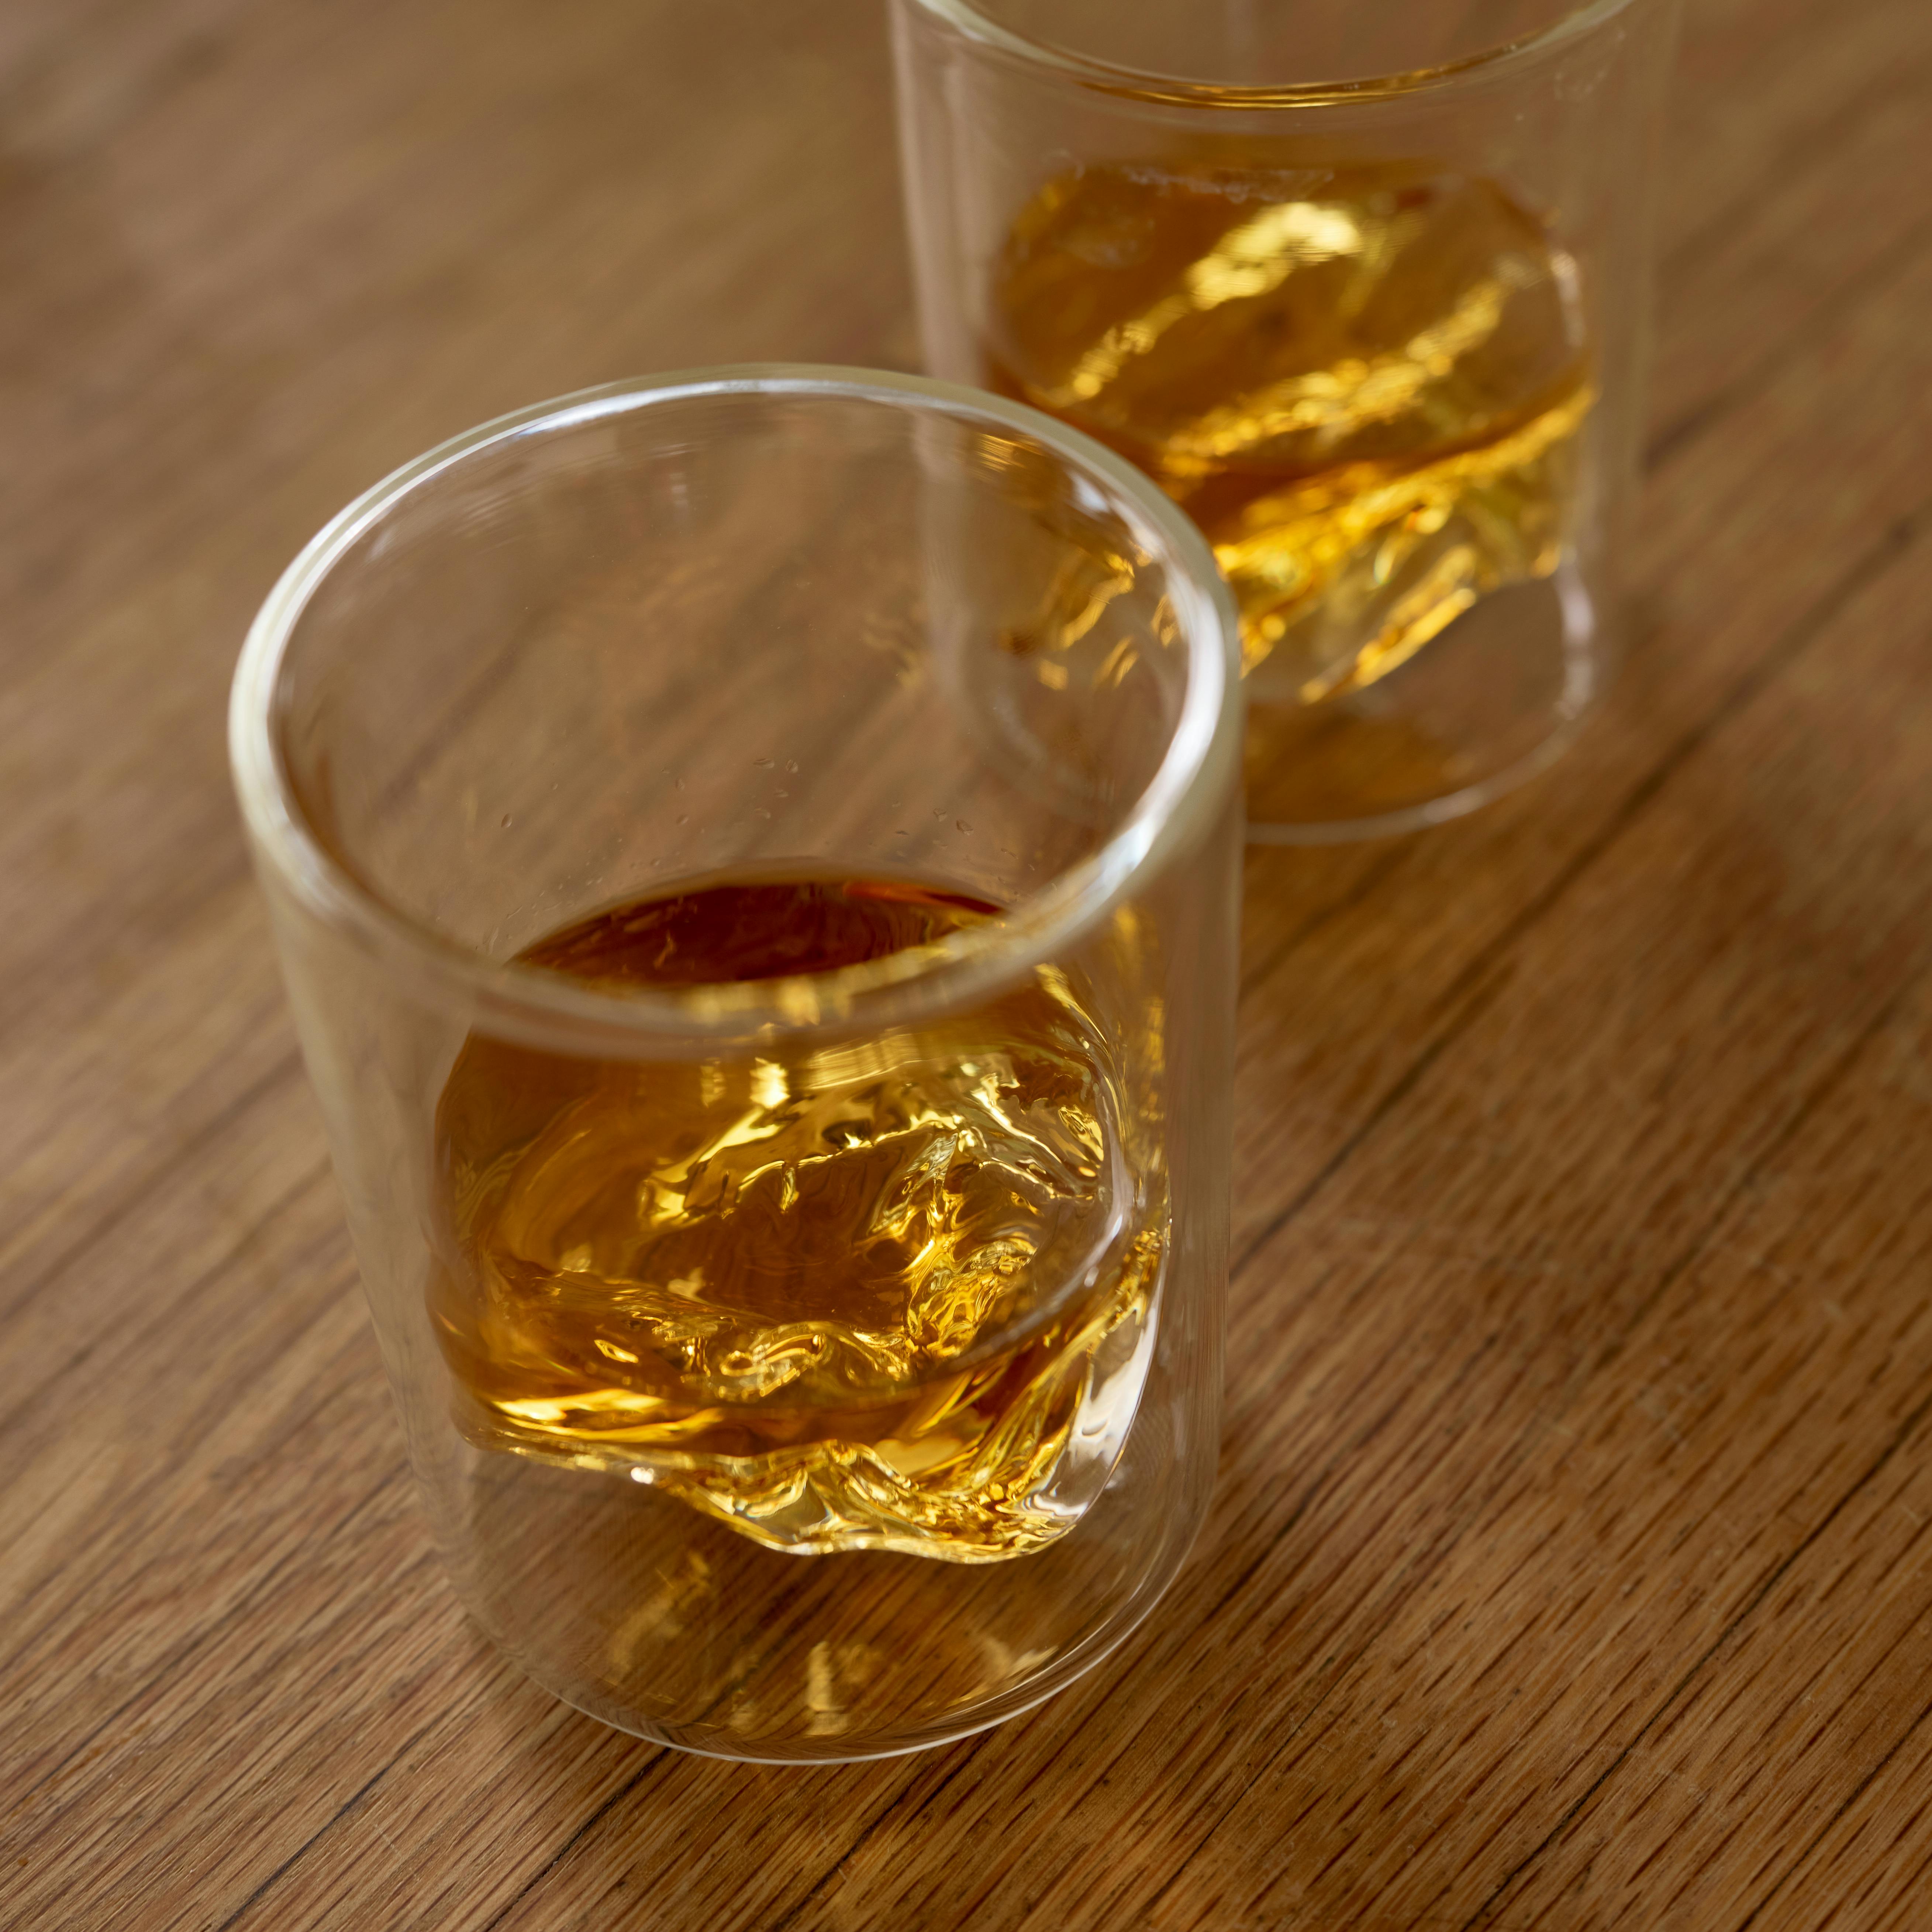 Grand Tetons - Set of 4 Whiskey Glasses